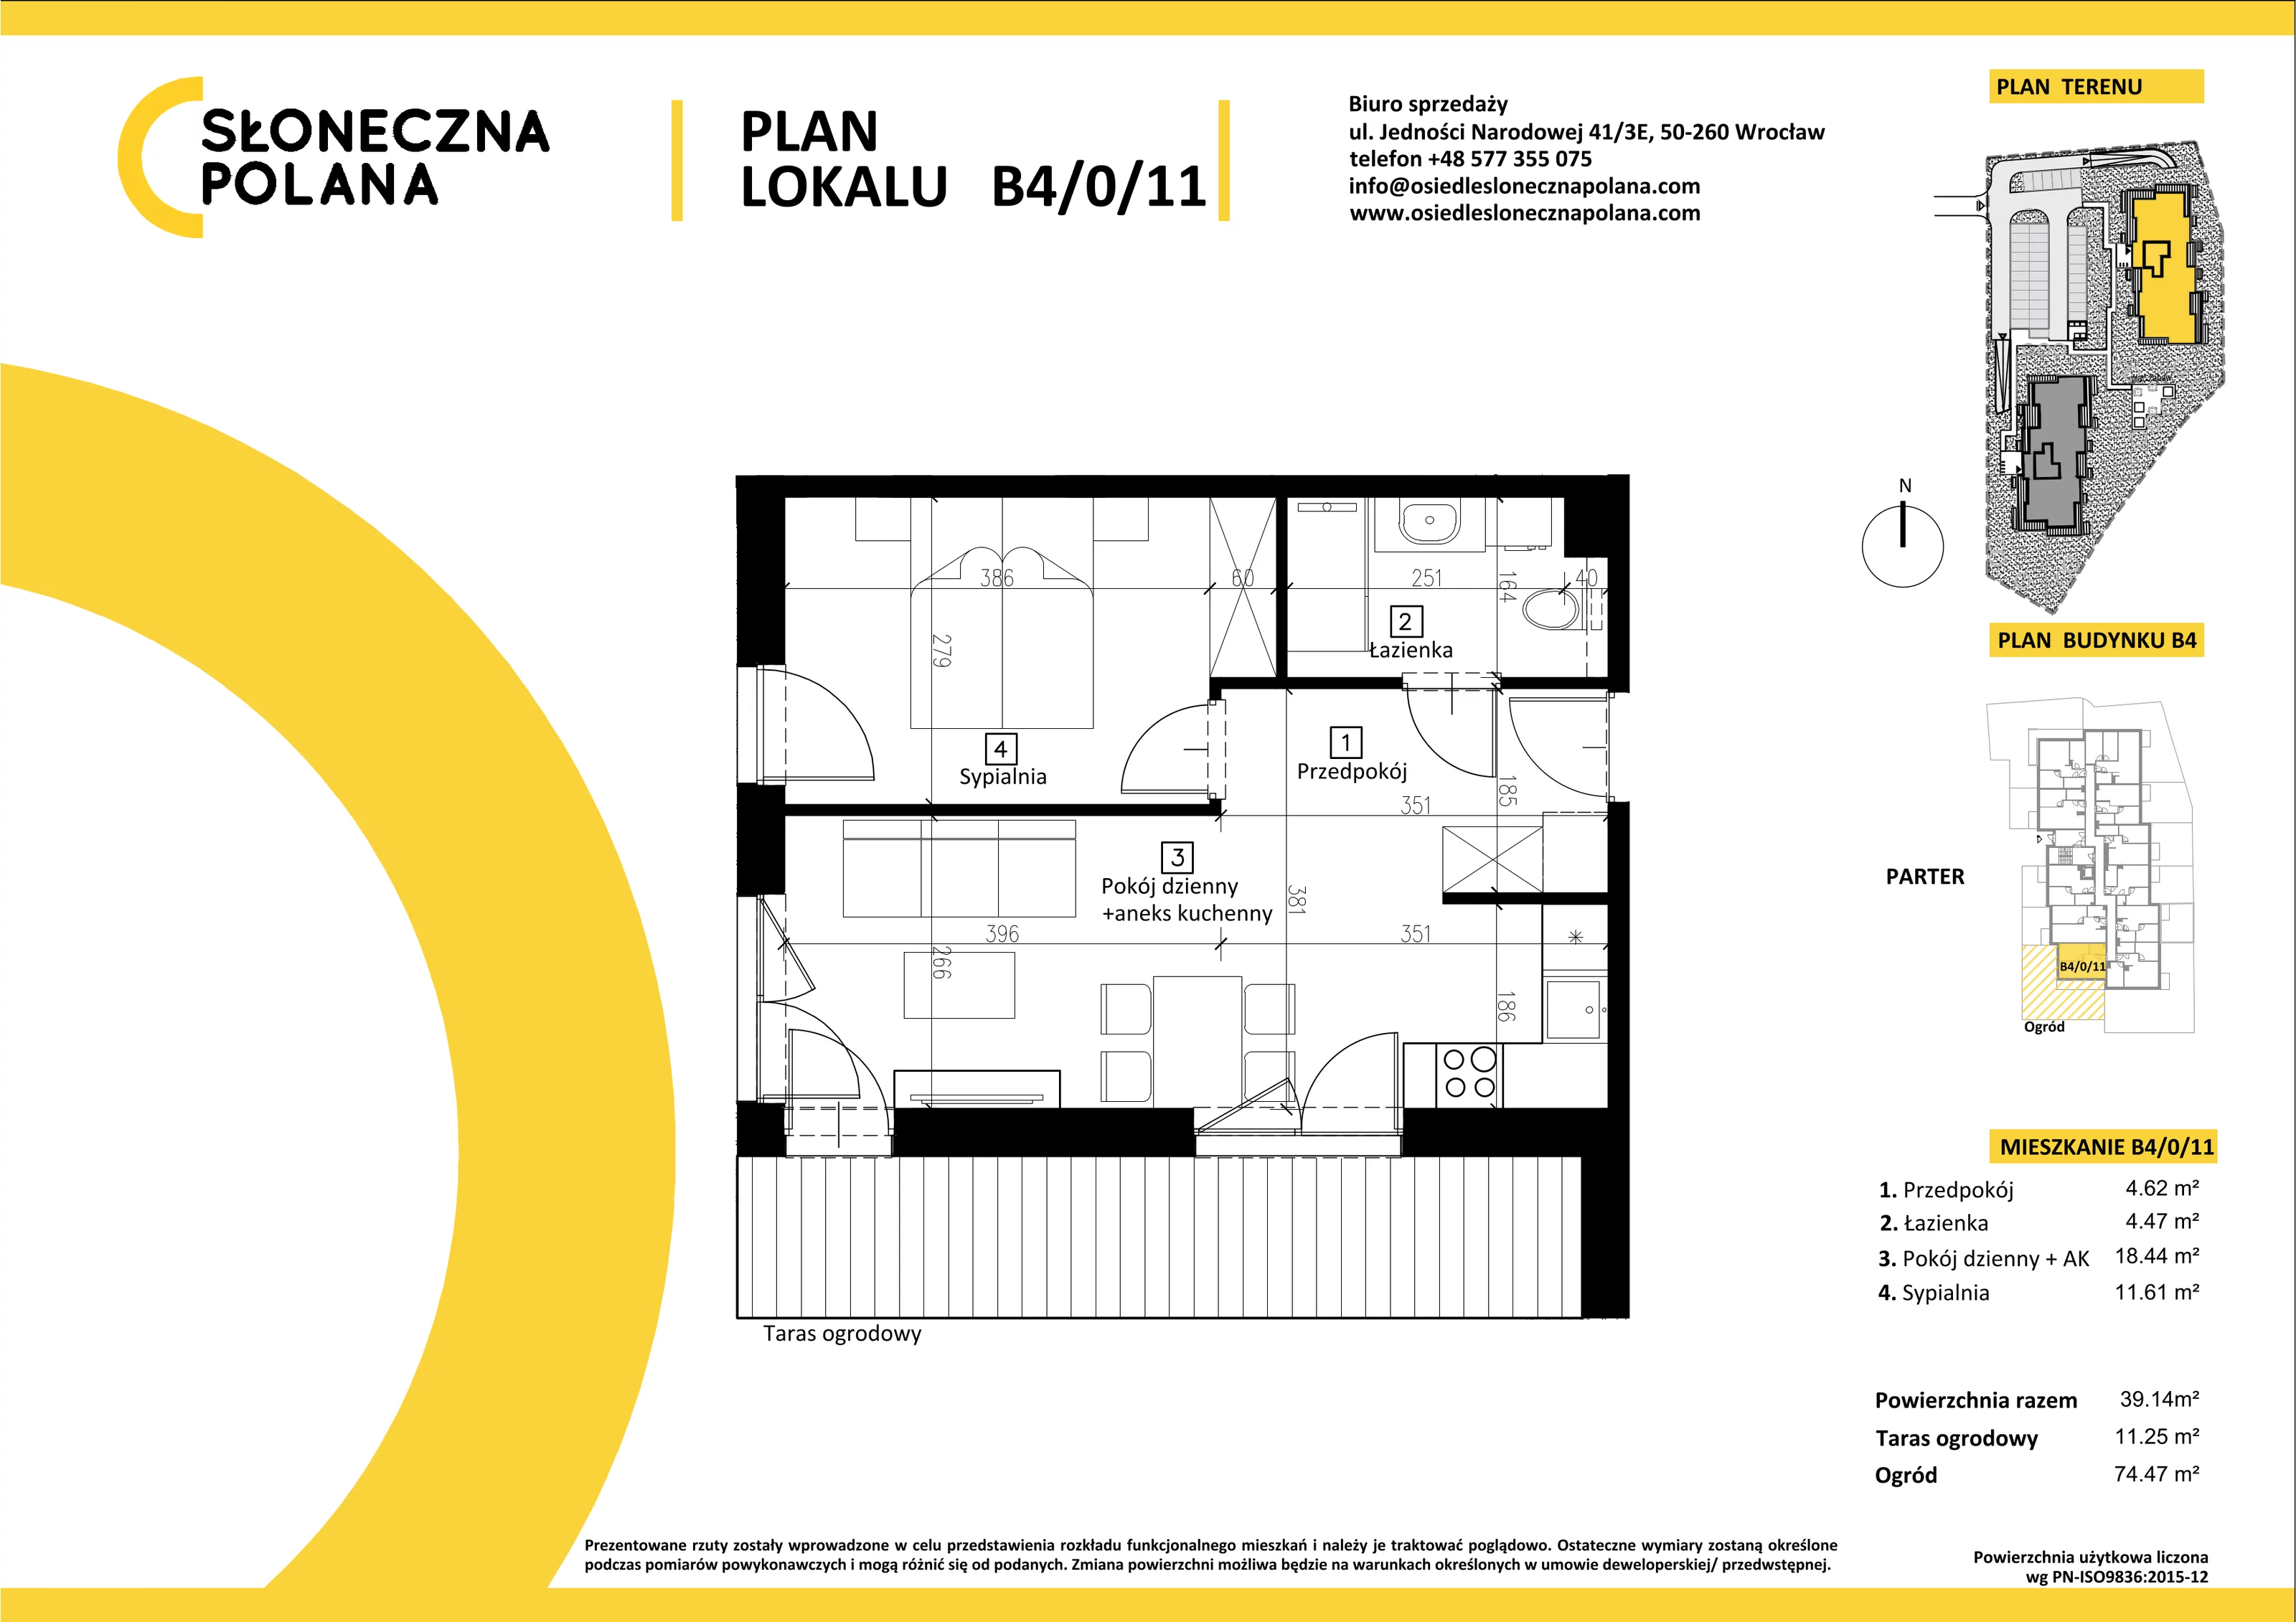 Mieszkanie 39,14 m², parter, oferta nr B4/0/11, Słoneczna Polana, Kudowa-Zdrój, ul. Bluszczowa